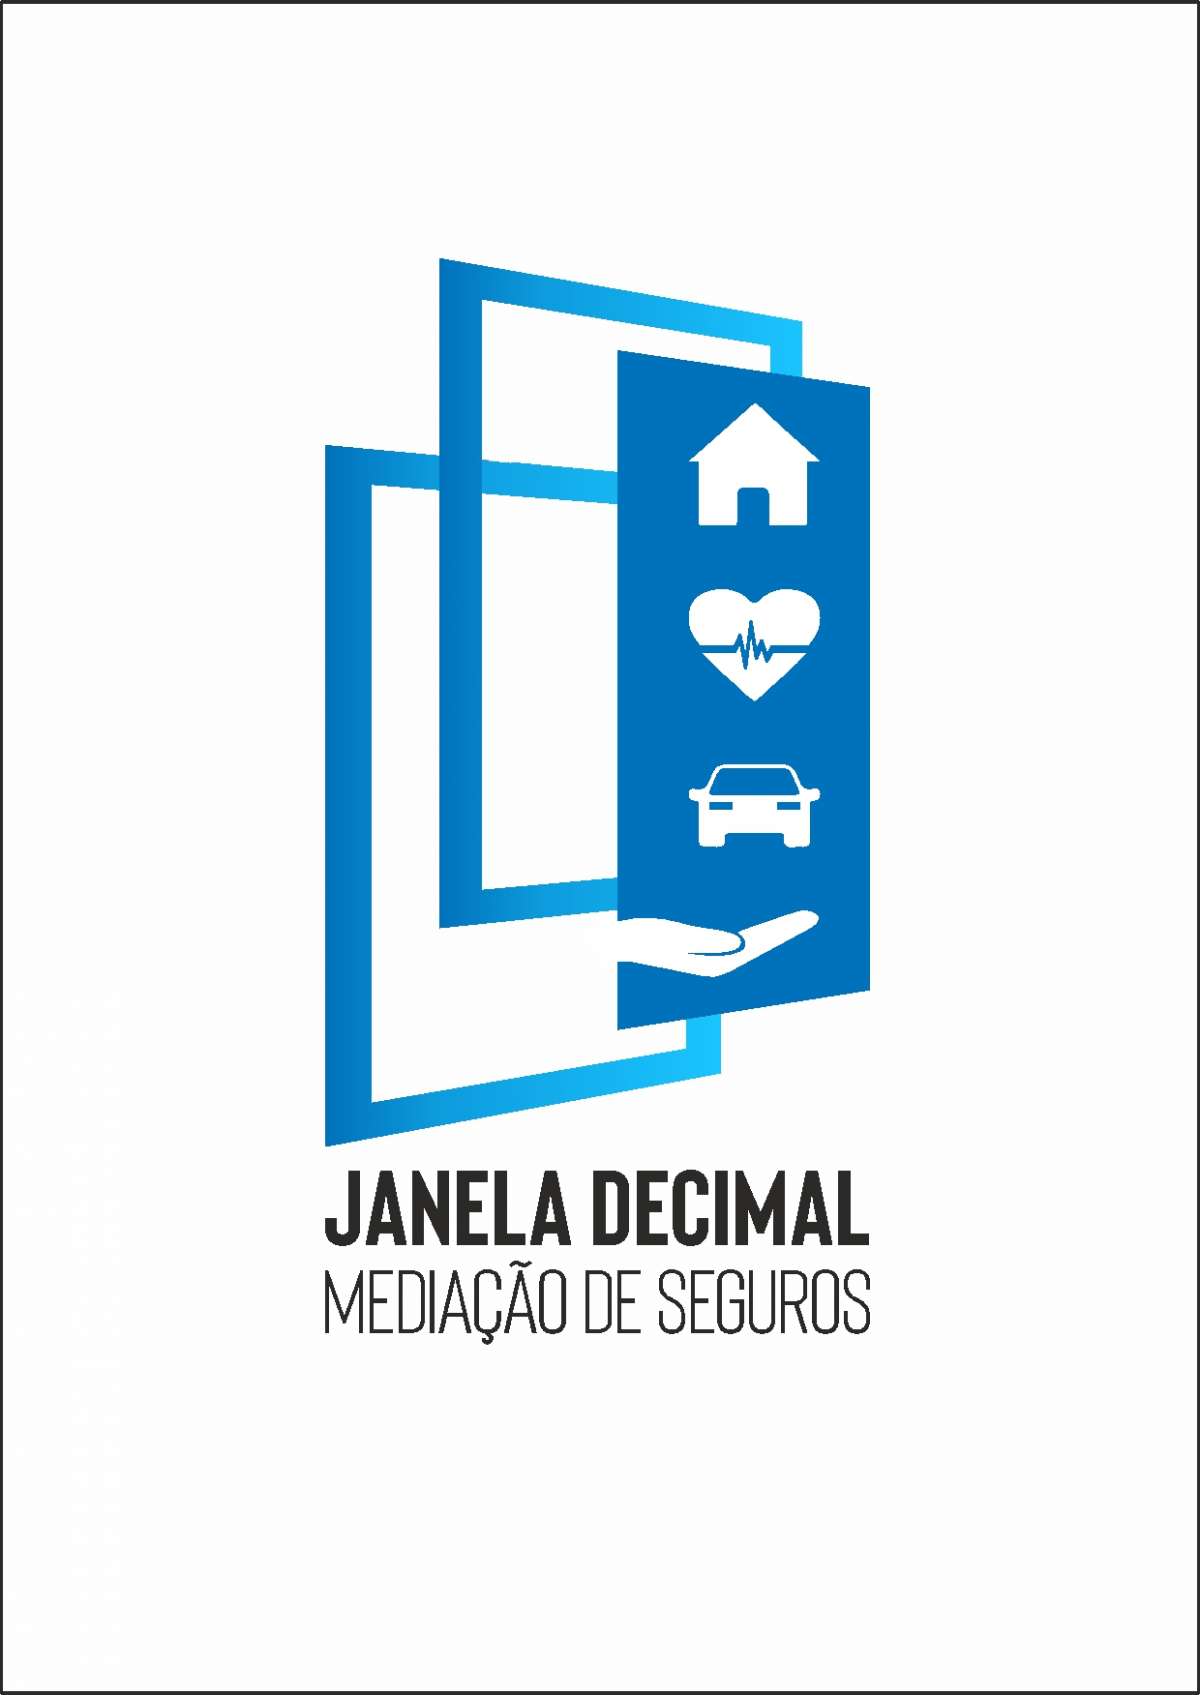 Mediação Seguros  Janela Decimal - Vila Nova de Gaia - Profissionais Financeiros e de Planeamento